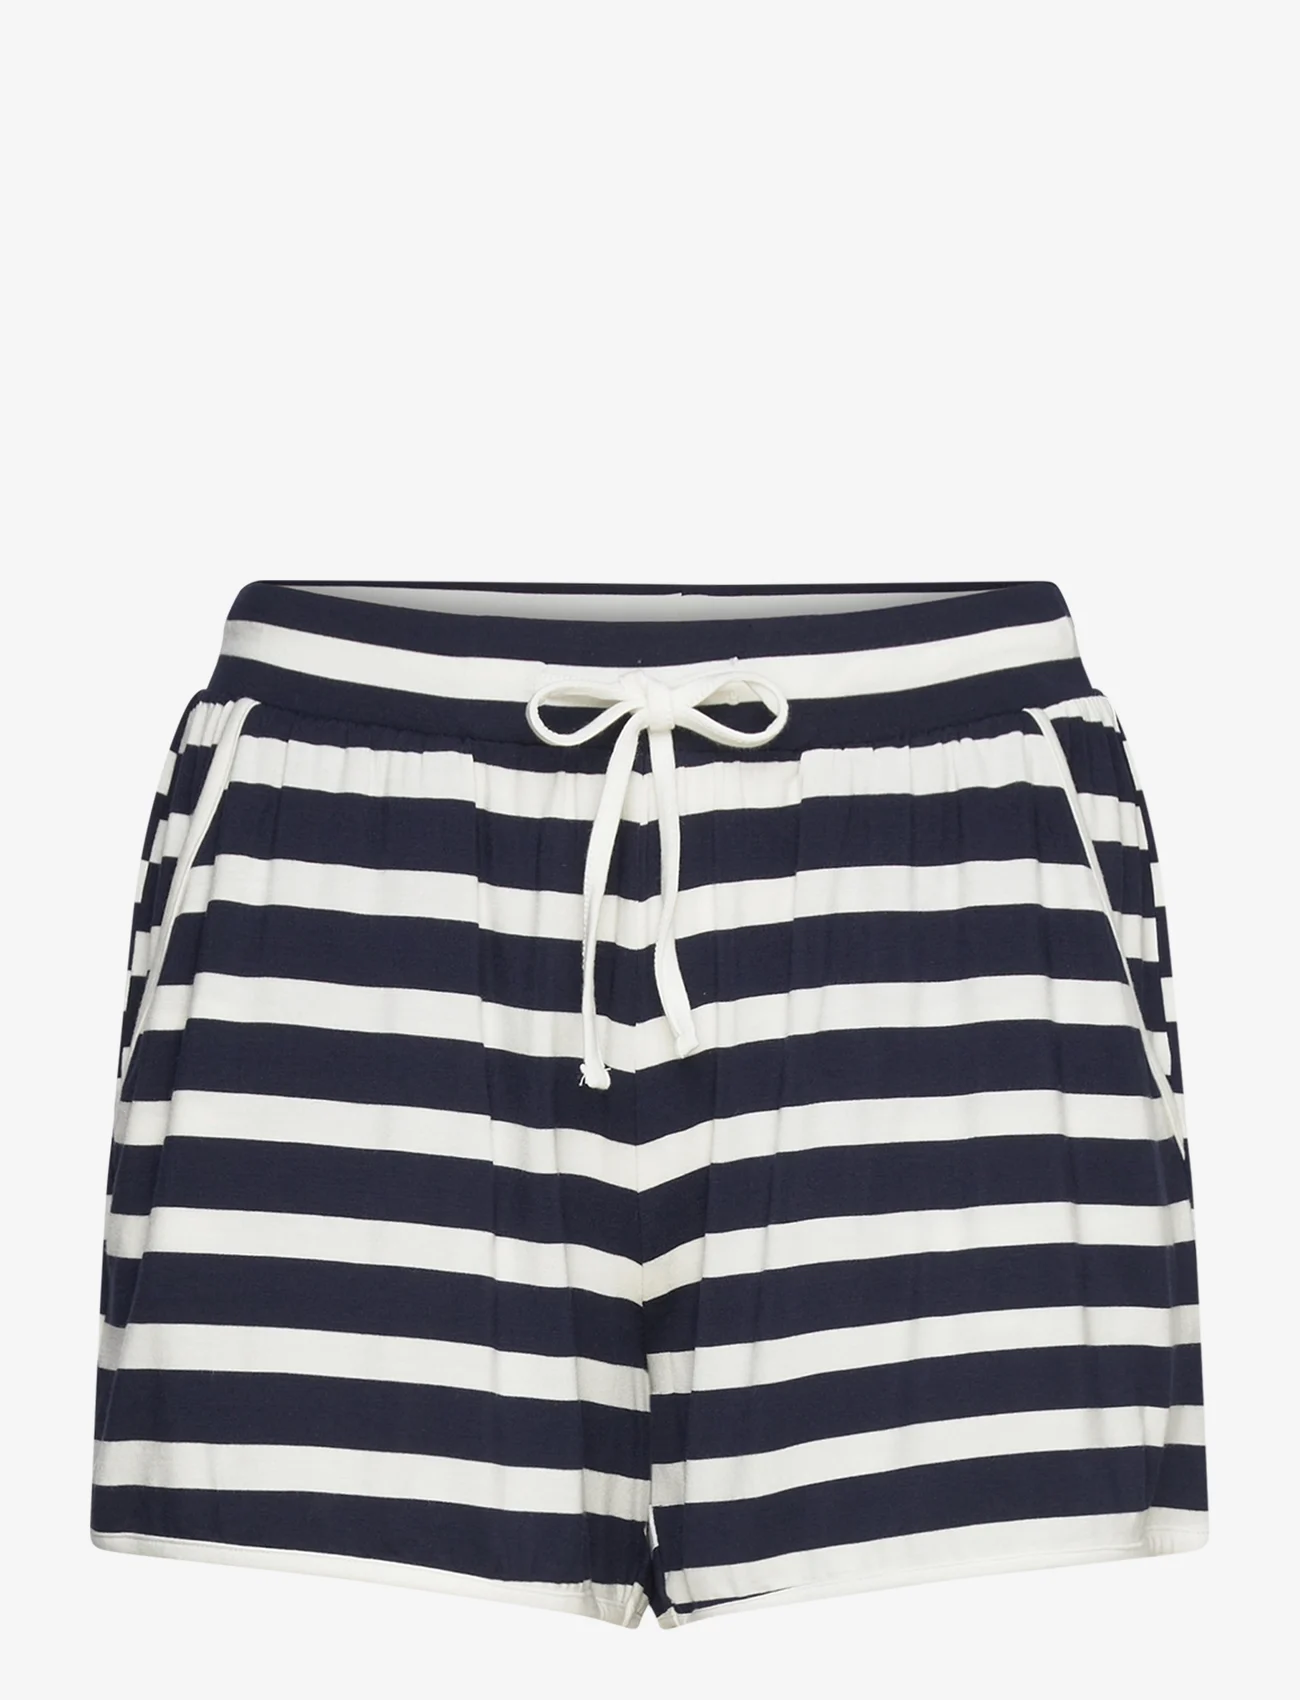 Missya - Softness shorts - pyjamasshorts - navy - 1